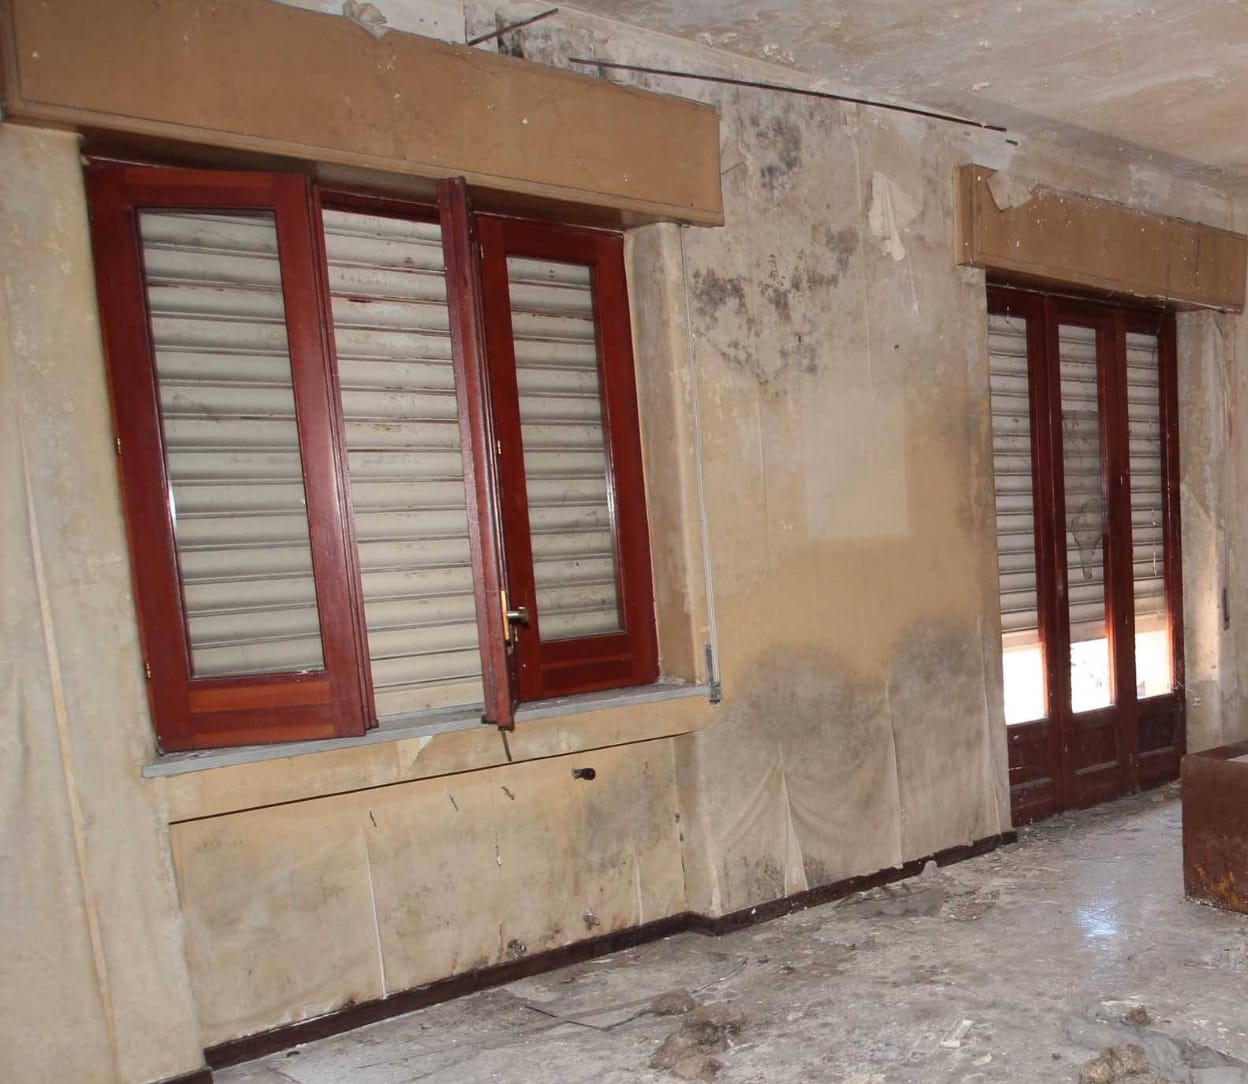 Villa abbandonata via Merlino a Catania, Cardello: “La struttura va affidata alle associazioni per impedirne la devastazione”